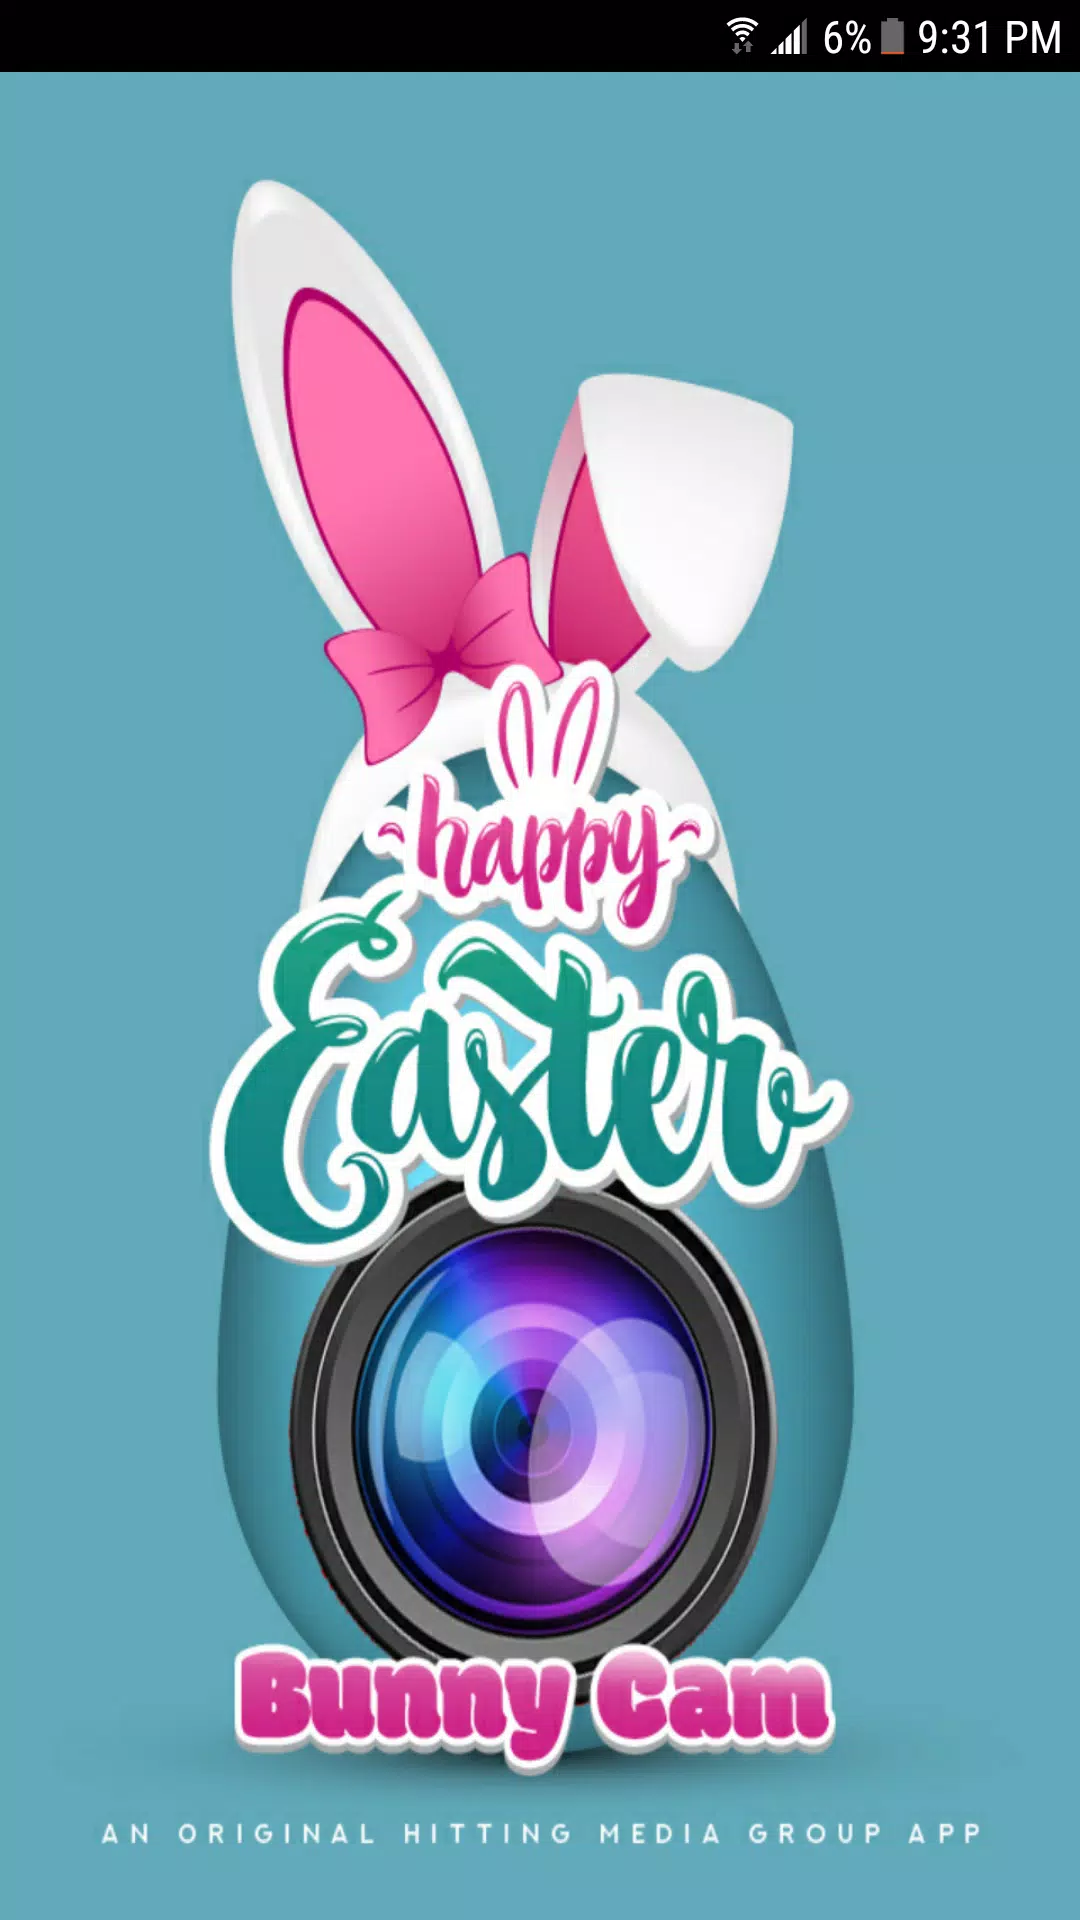 App do Dia - Easter Sweeper